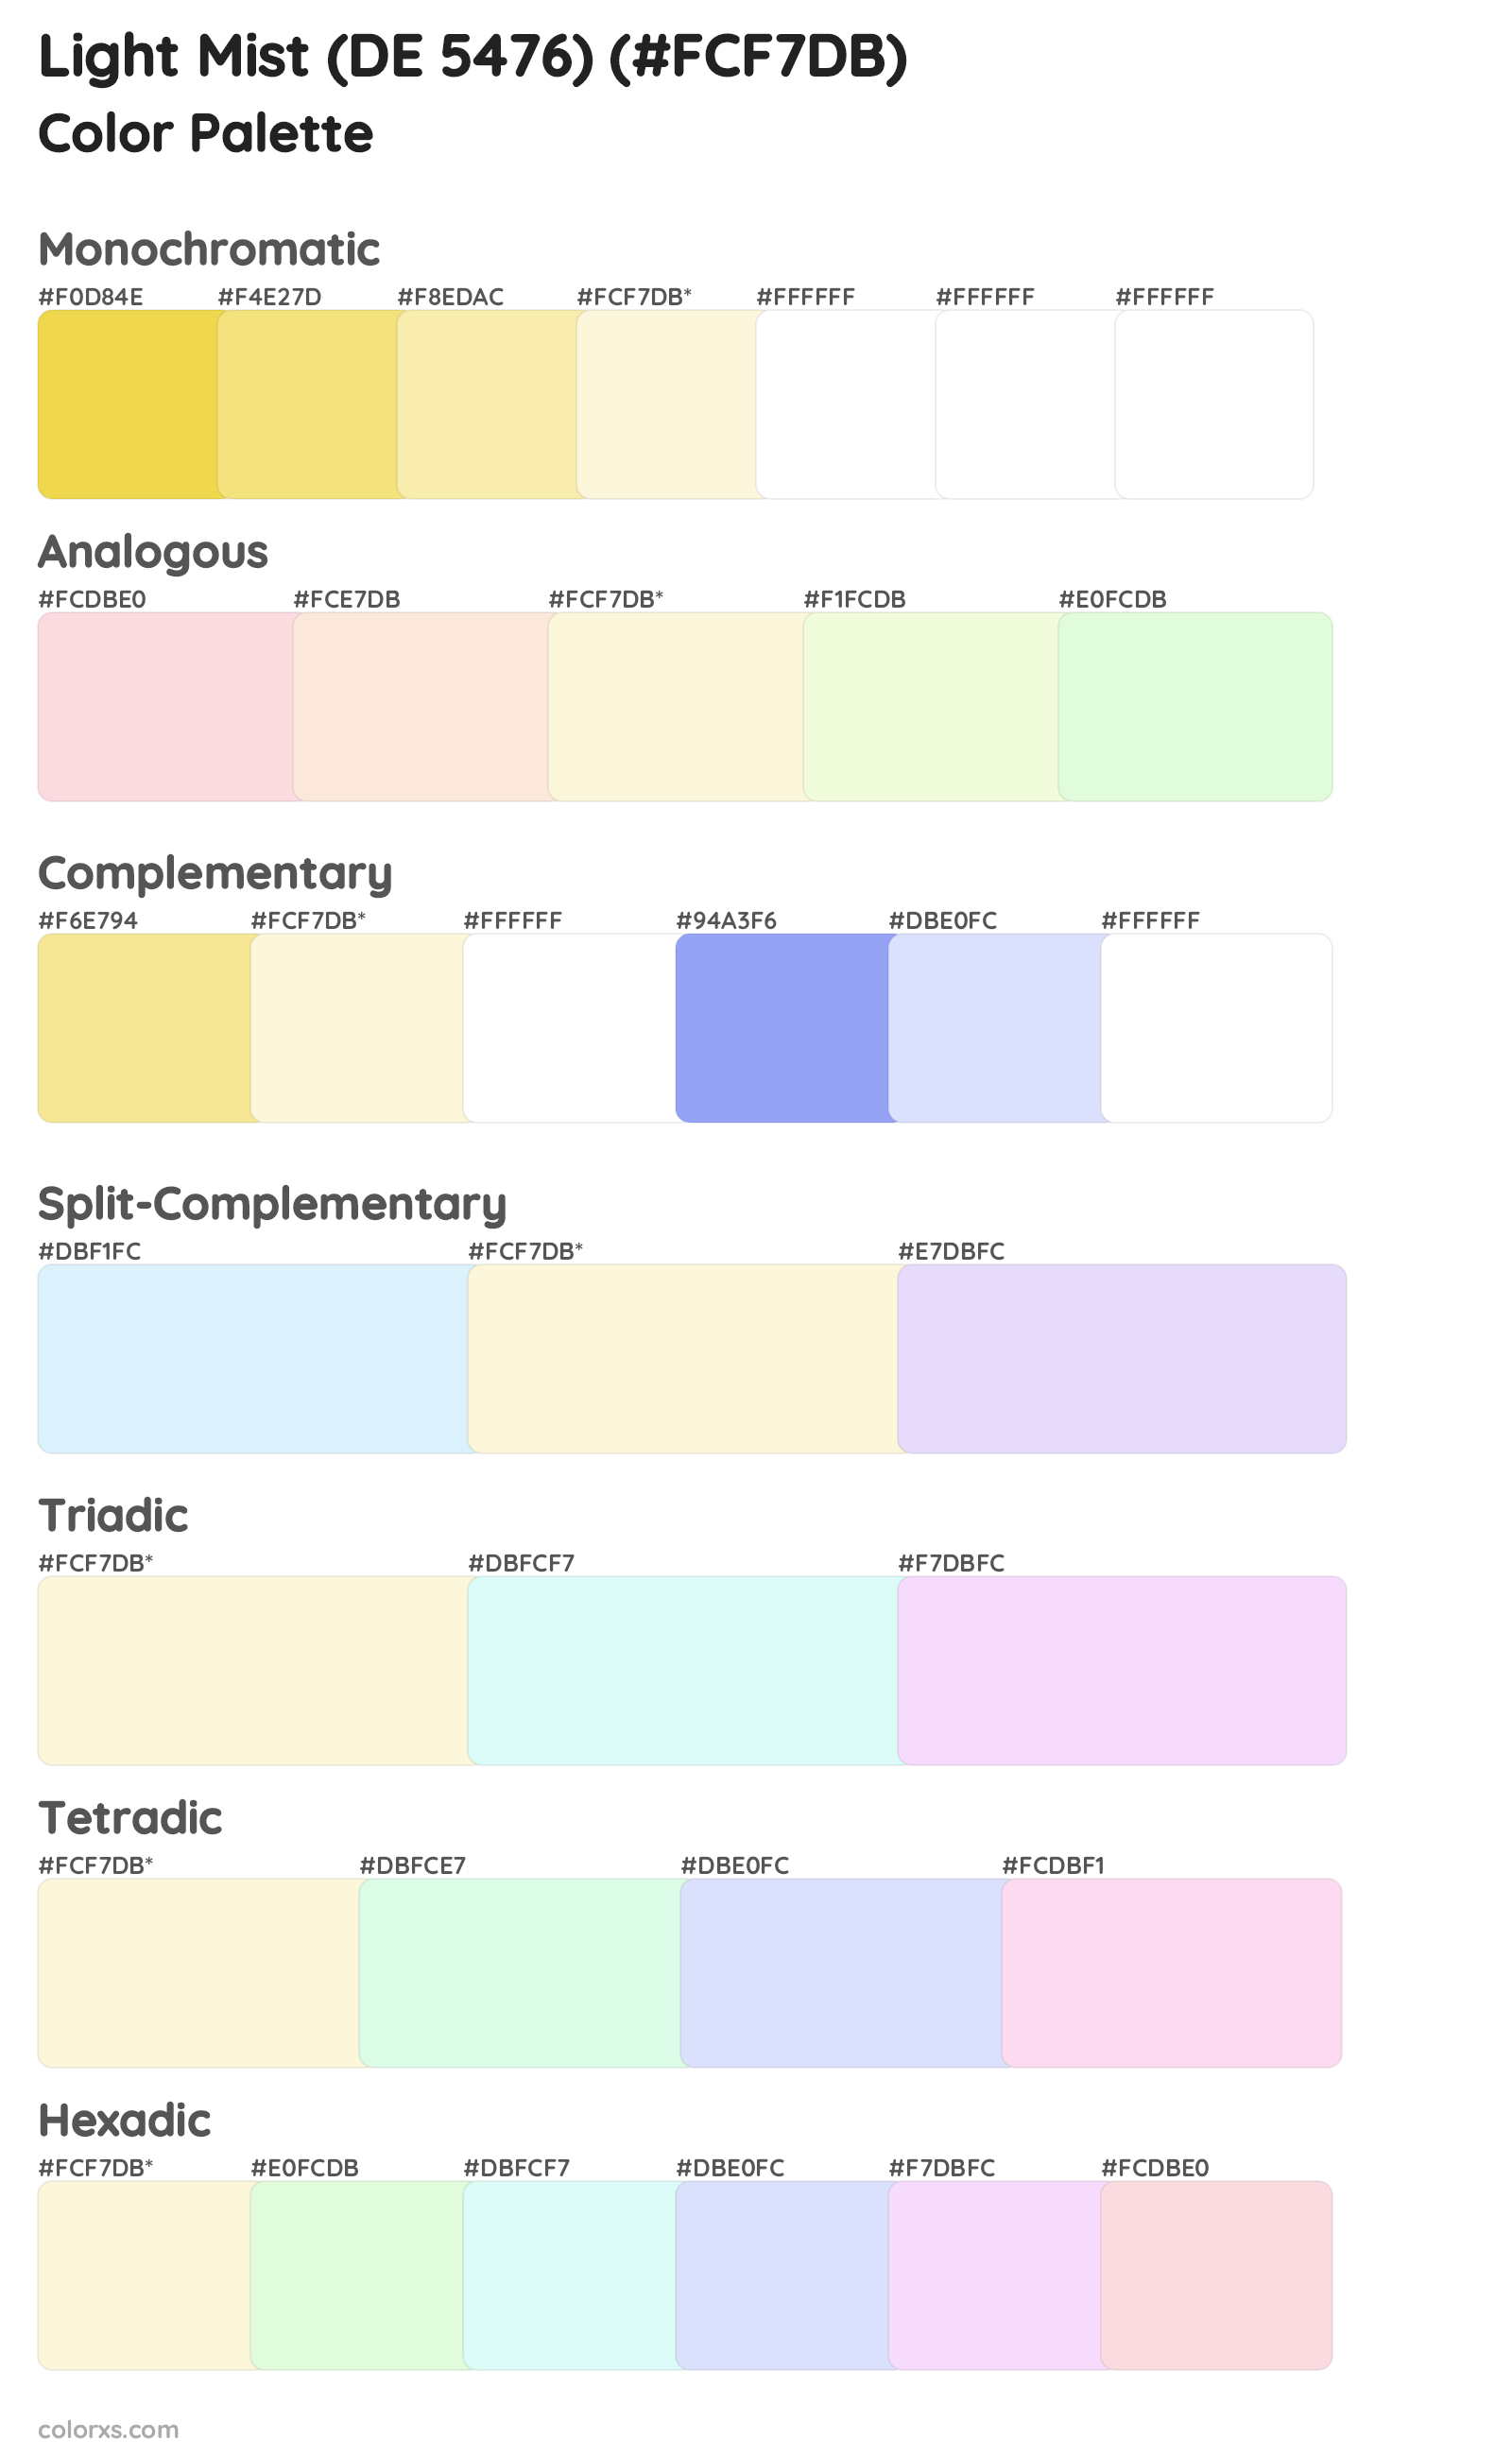 Light Mist (DE 5476) Color Scheme Palettes